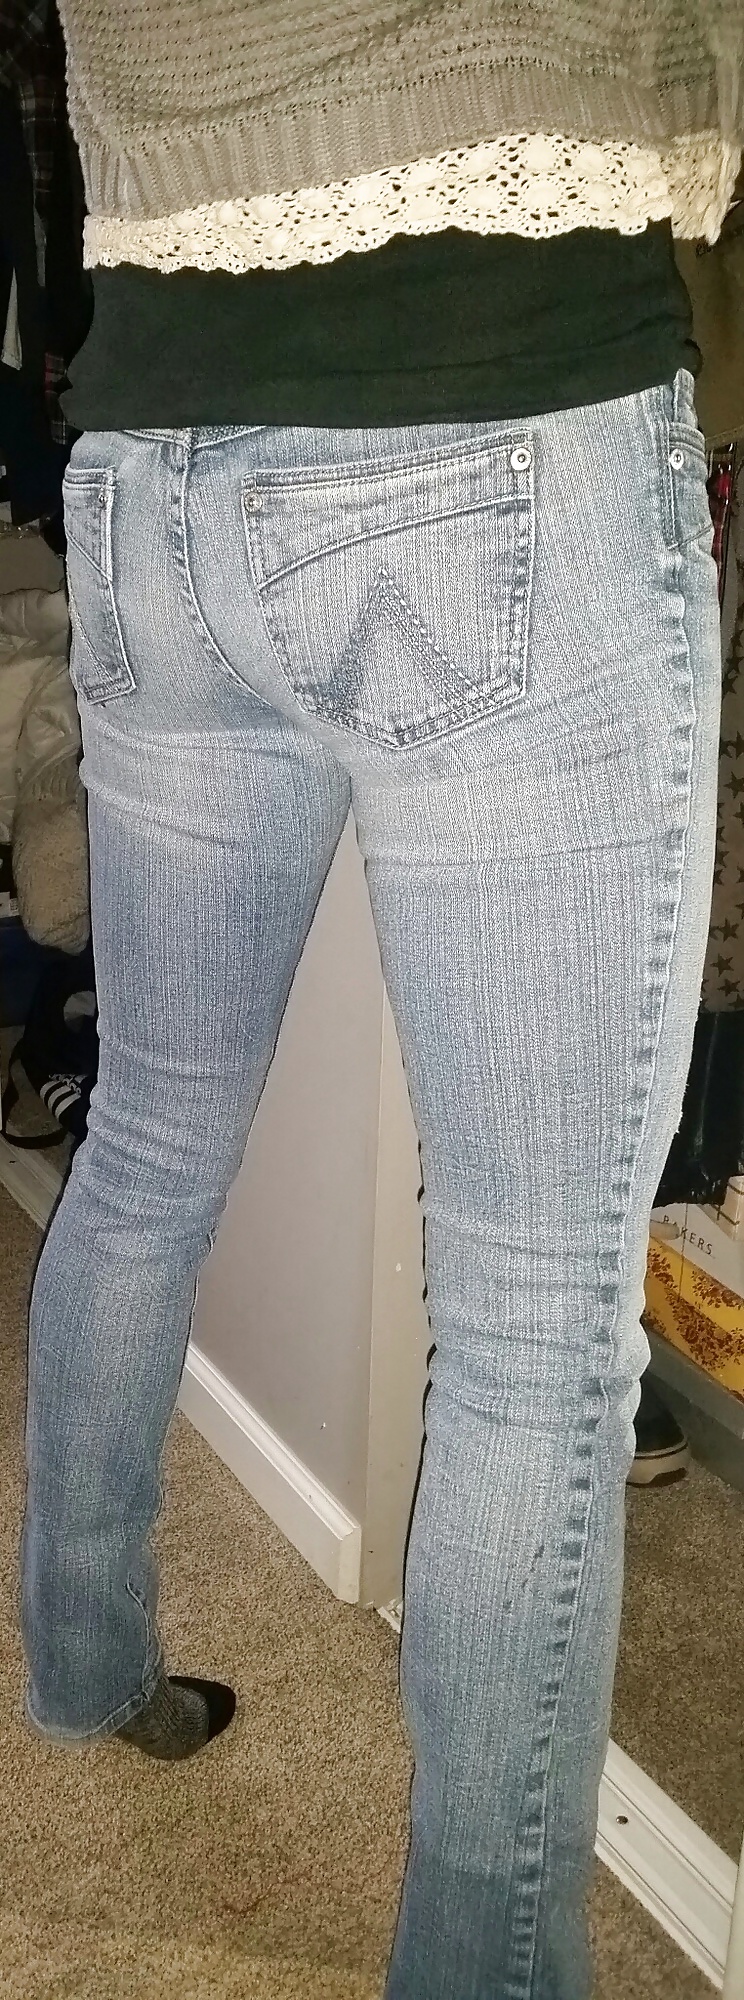 XXX random jeans, ass, bra shots